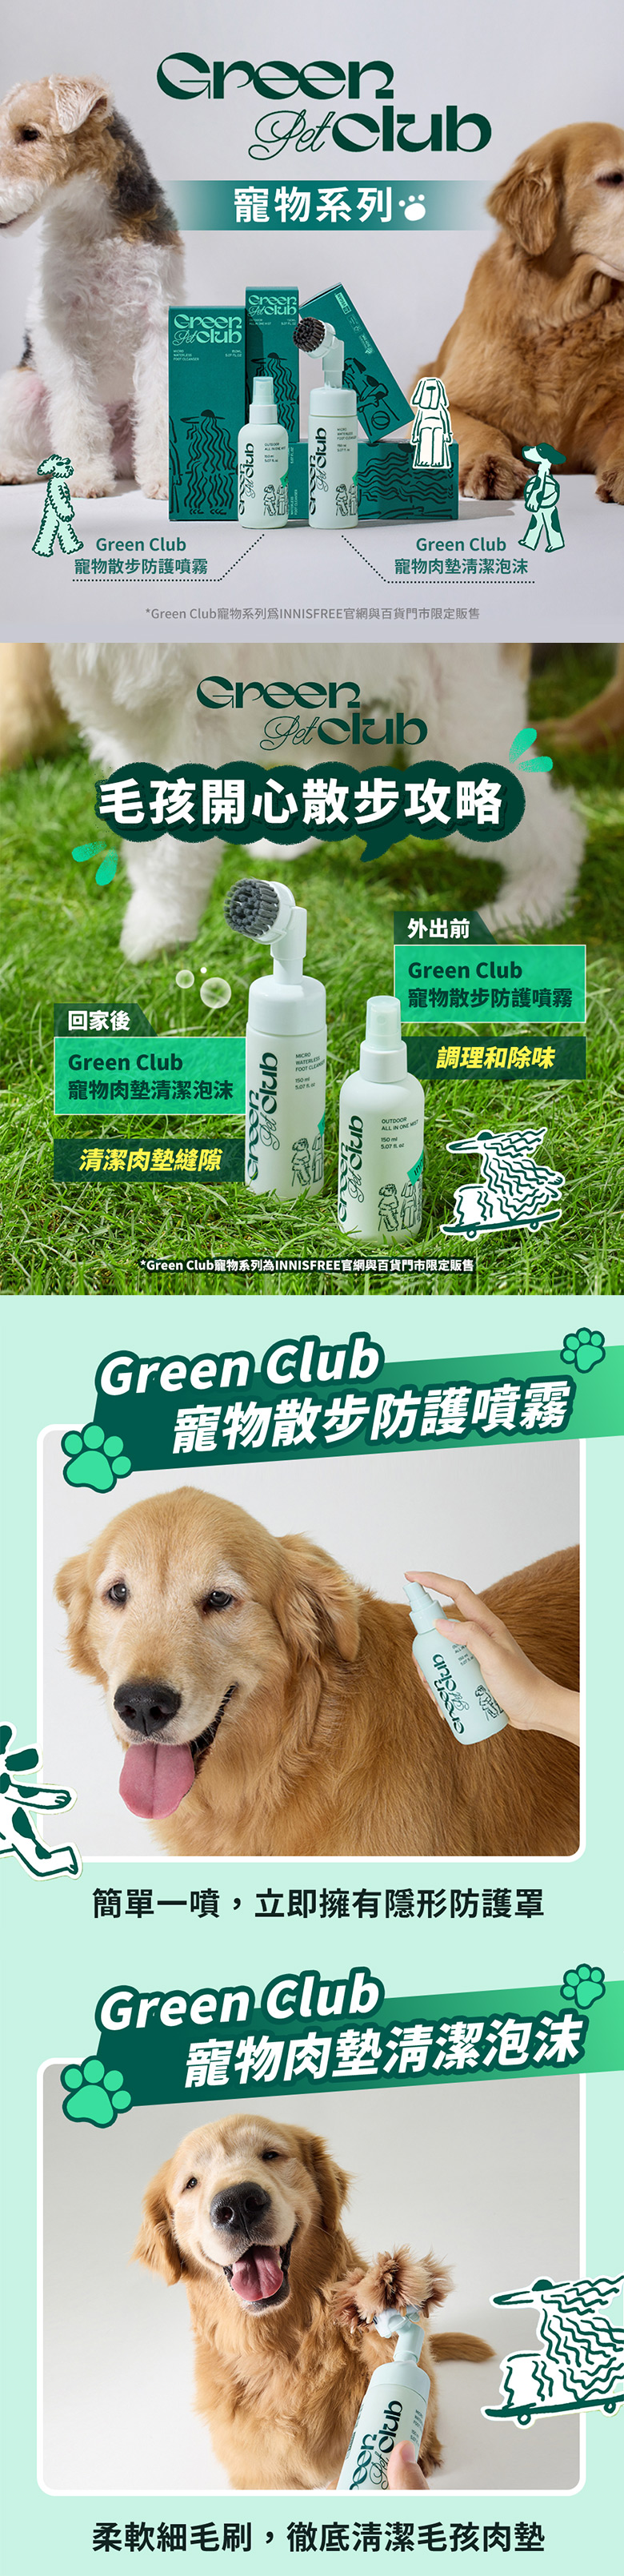 Green Club寵物肉墊清潔慕斯 innisfree GREEN PET CLUB MICRO WATERELESS FOOT CLEANSER